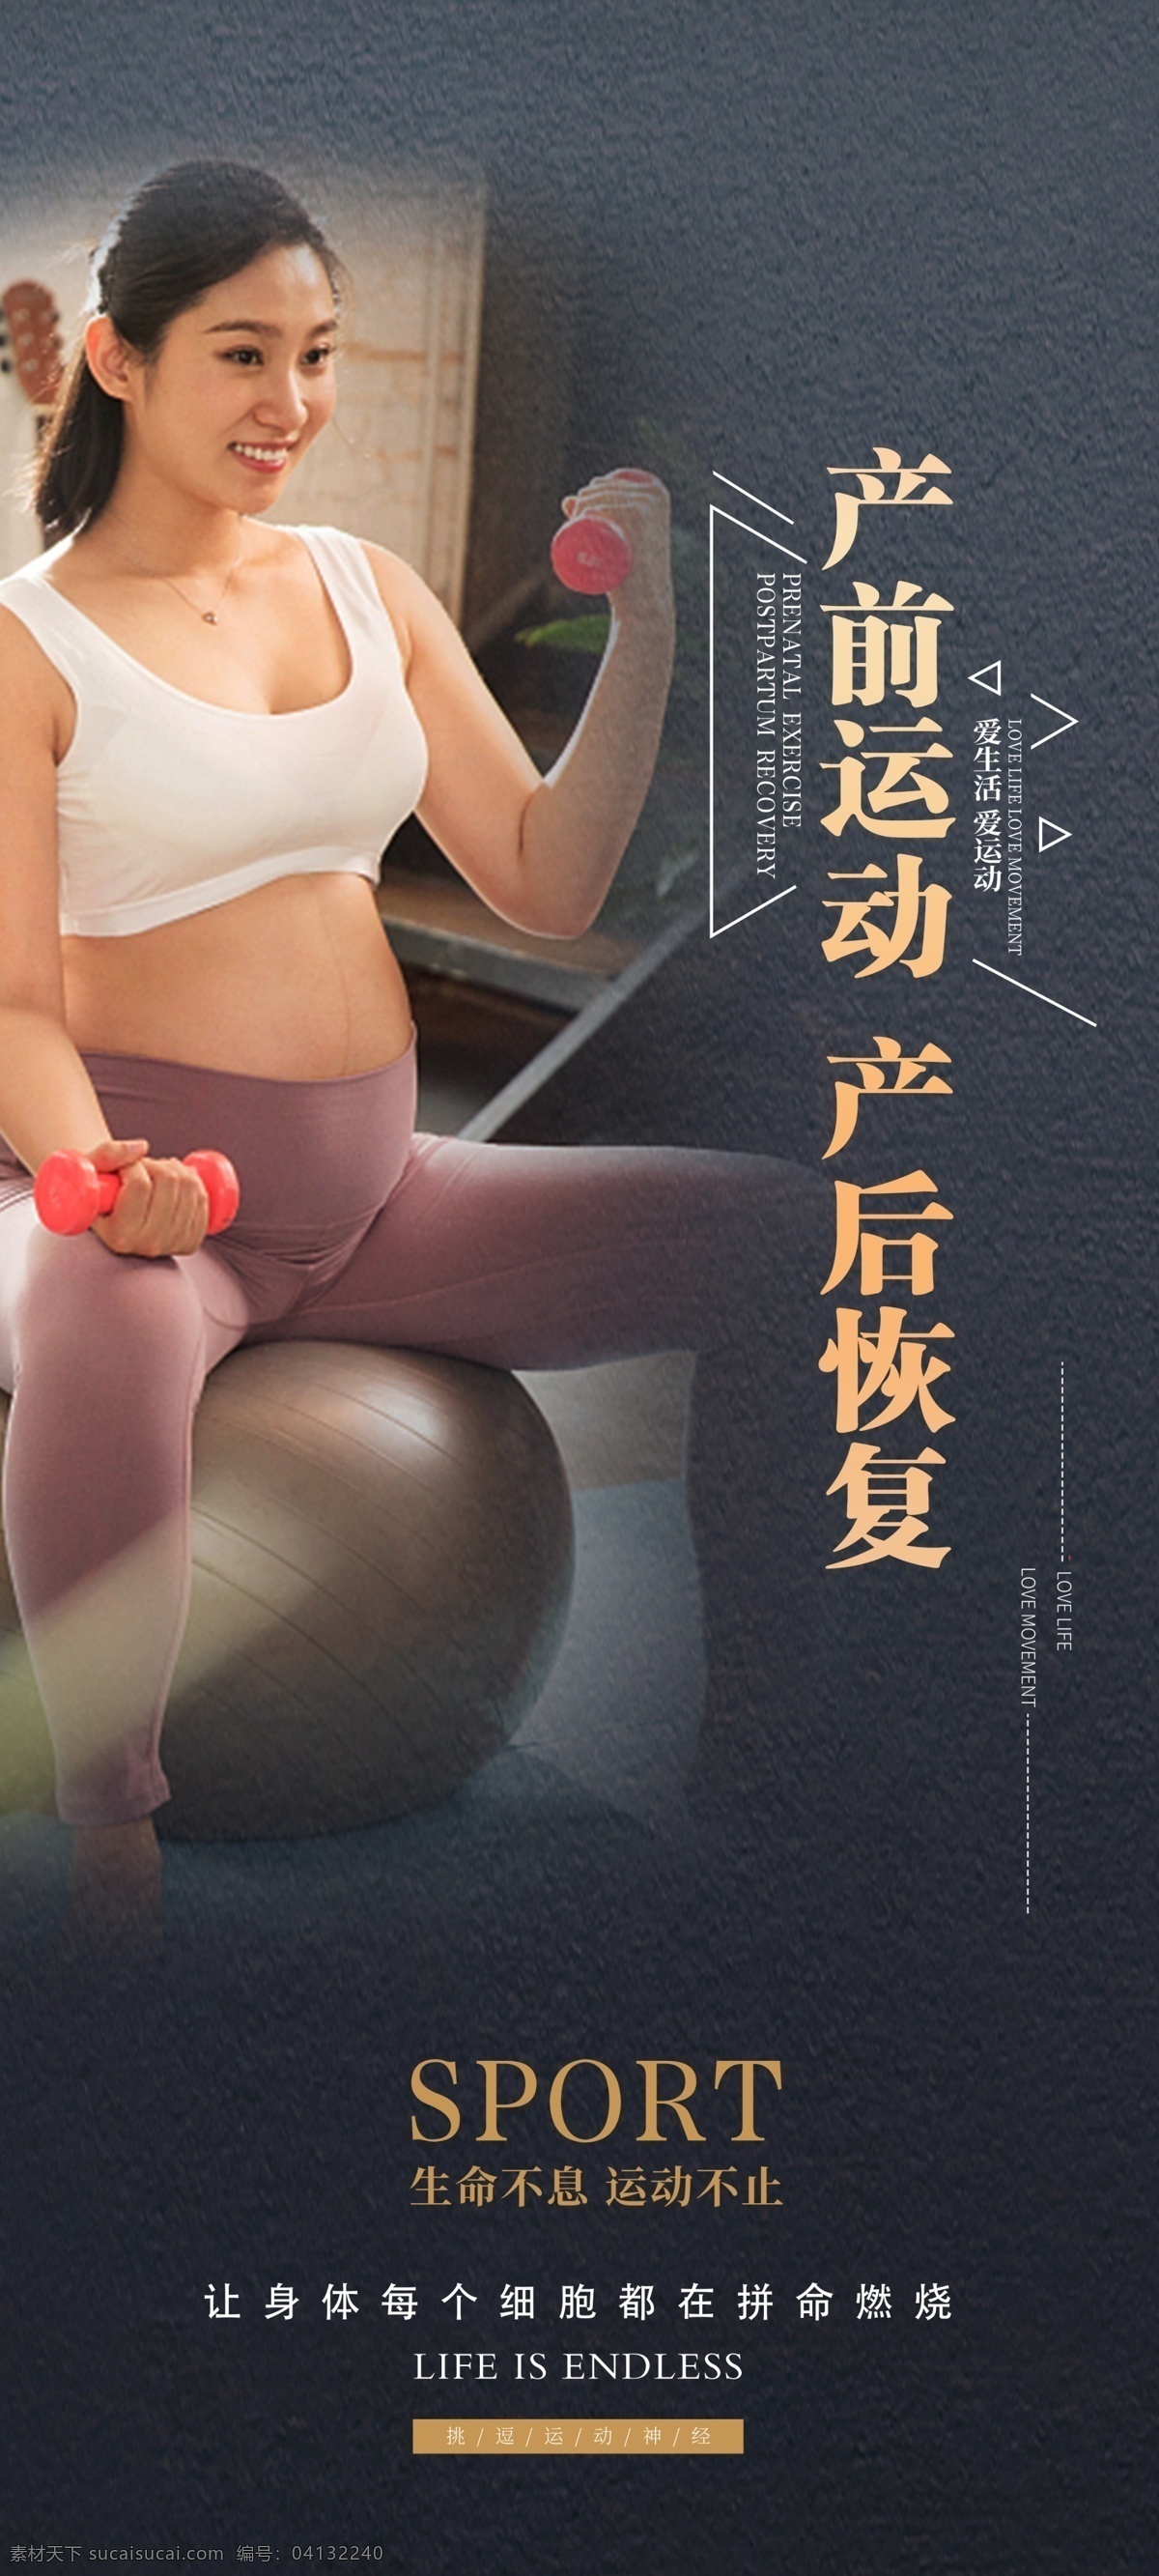 健身展板 健身 运动 训练 展板 x展架 孕妇健身 课程 企业展板 系列展示 展板模板 健身图片 健身中心 健身kt版 健身宣传 健身运动